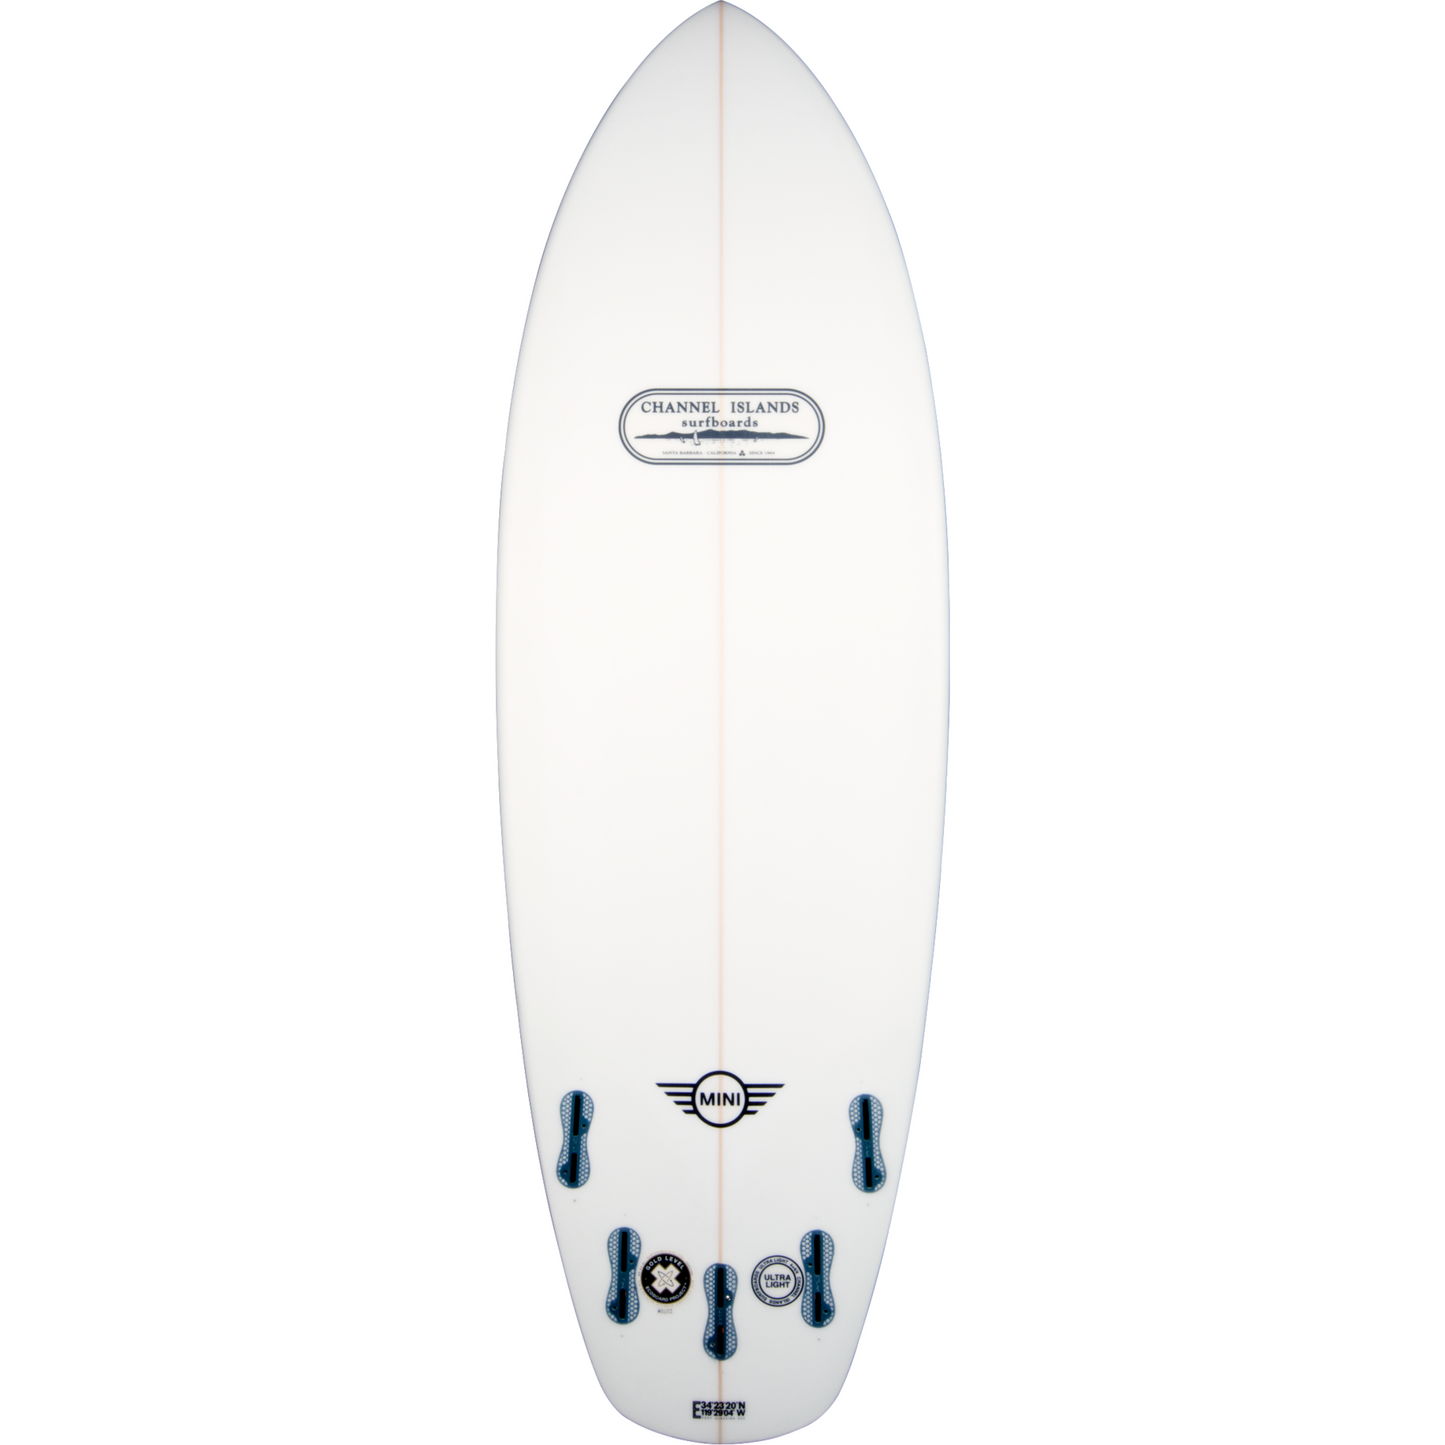 Channel Islands - Mini Surfboard